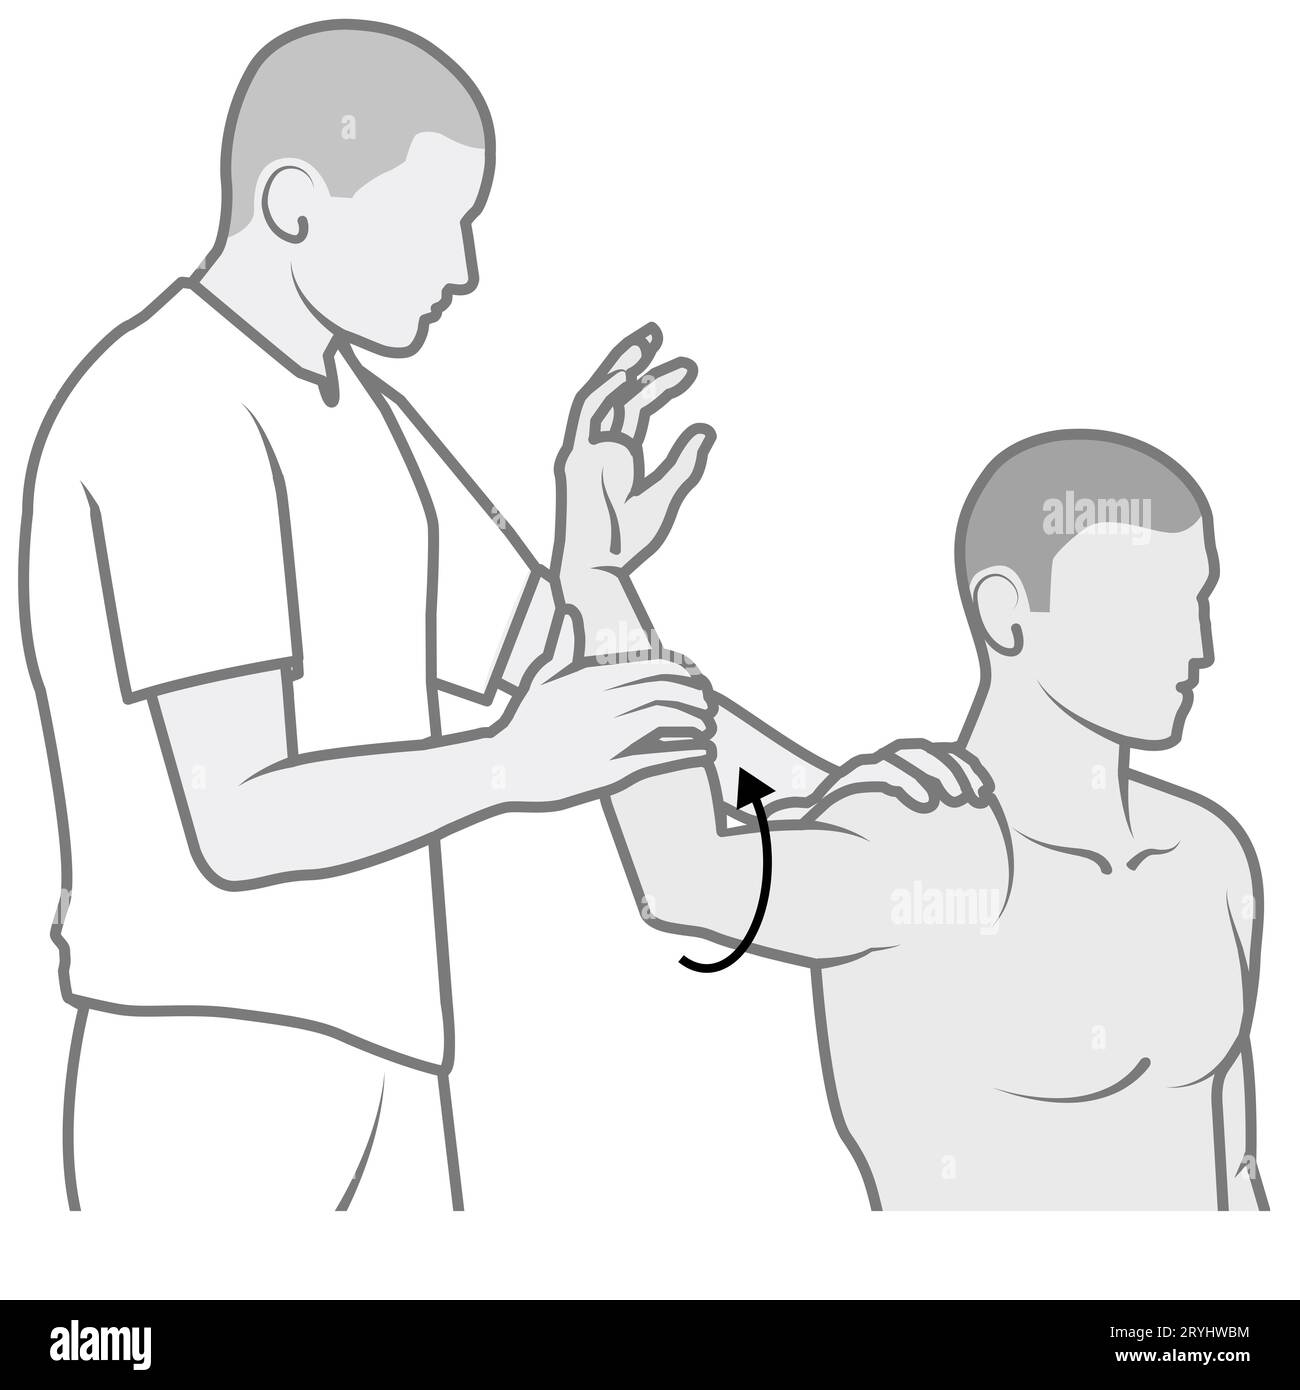 Die posteriore Angst ist eine Schulteruntersuchung, bei der der Arm nach außen gedreht wird, um festzustellen, ob die posteriore Schulter instabil oder unangenehm ist Stockfoto